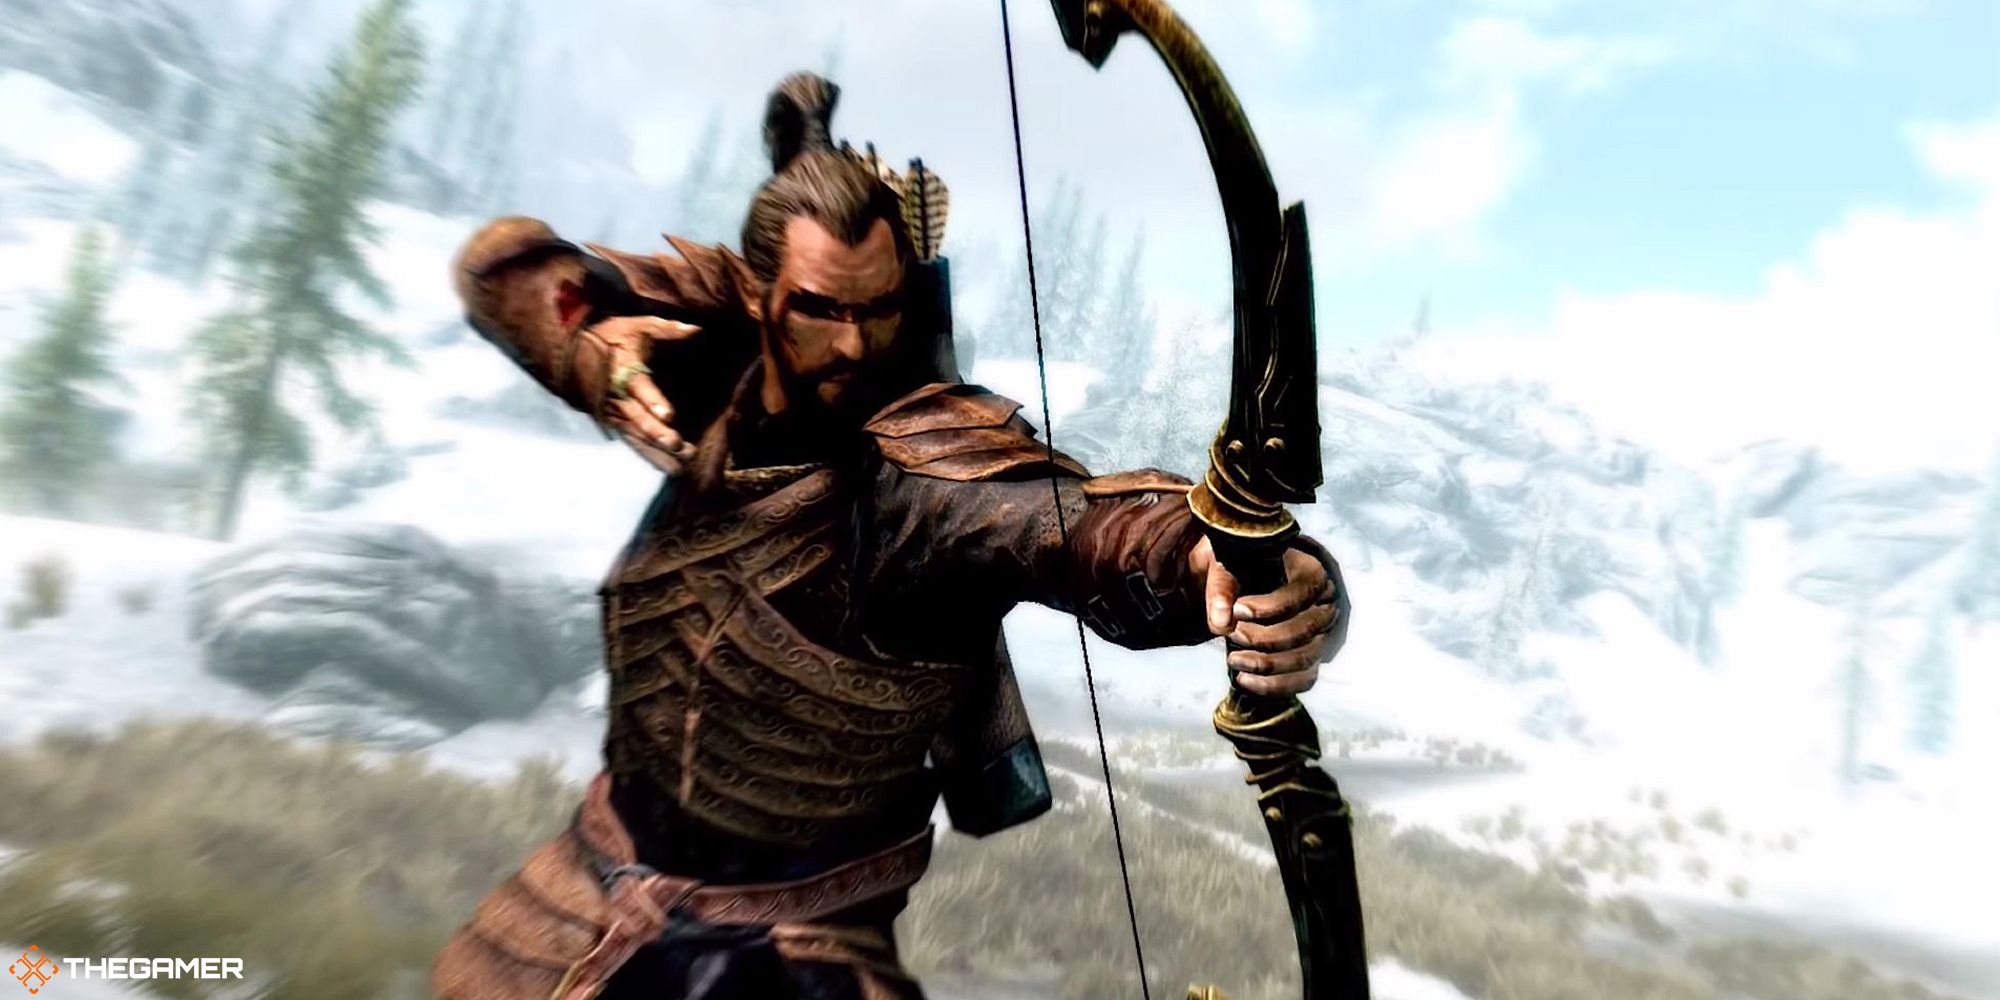 An elf shoots an arrow with a bow.